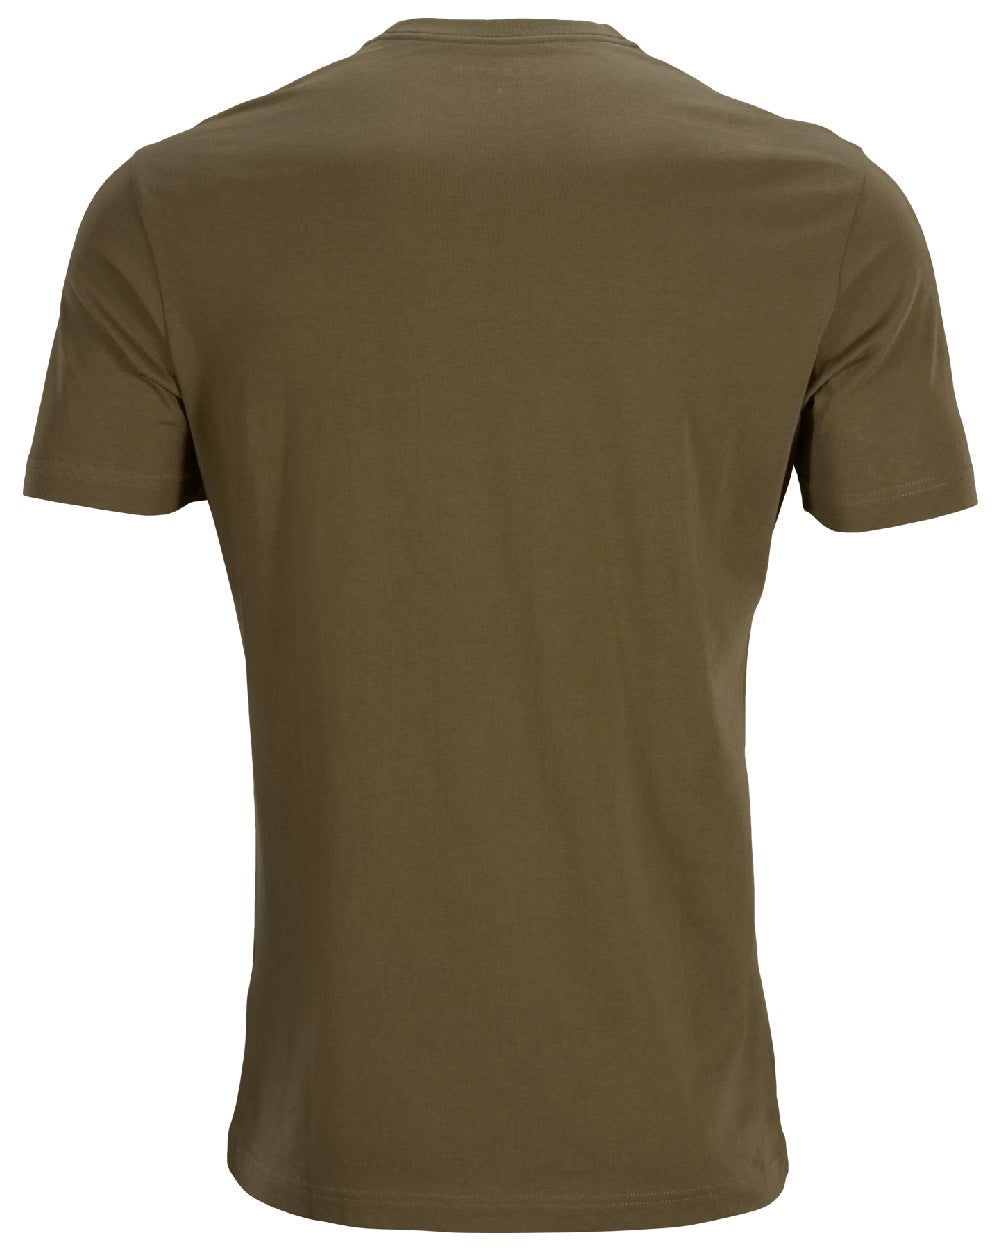 Light Willow Green coloured Harkila Pro Hunter Short Sleeve T-Shirt on white background 